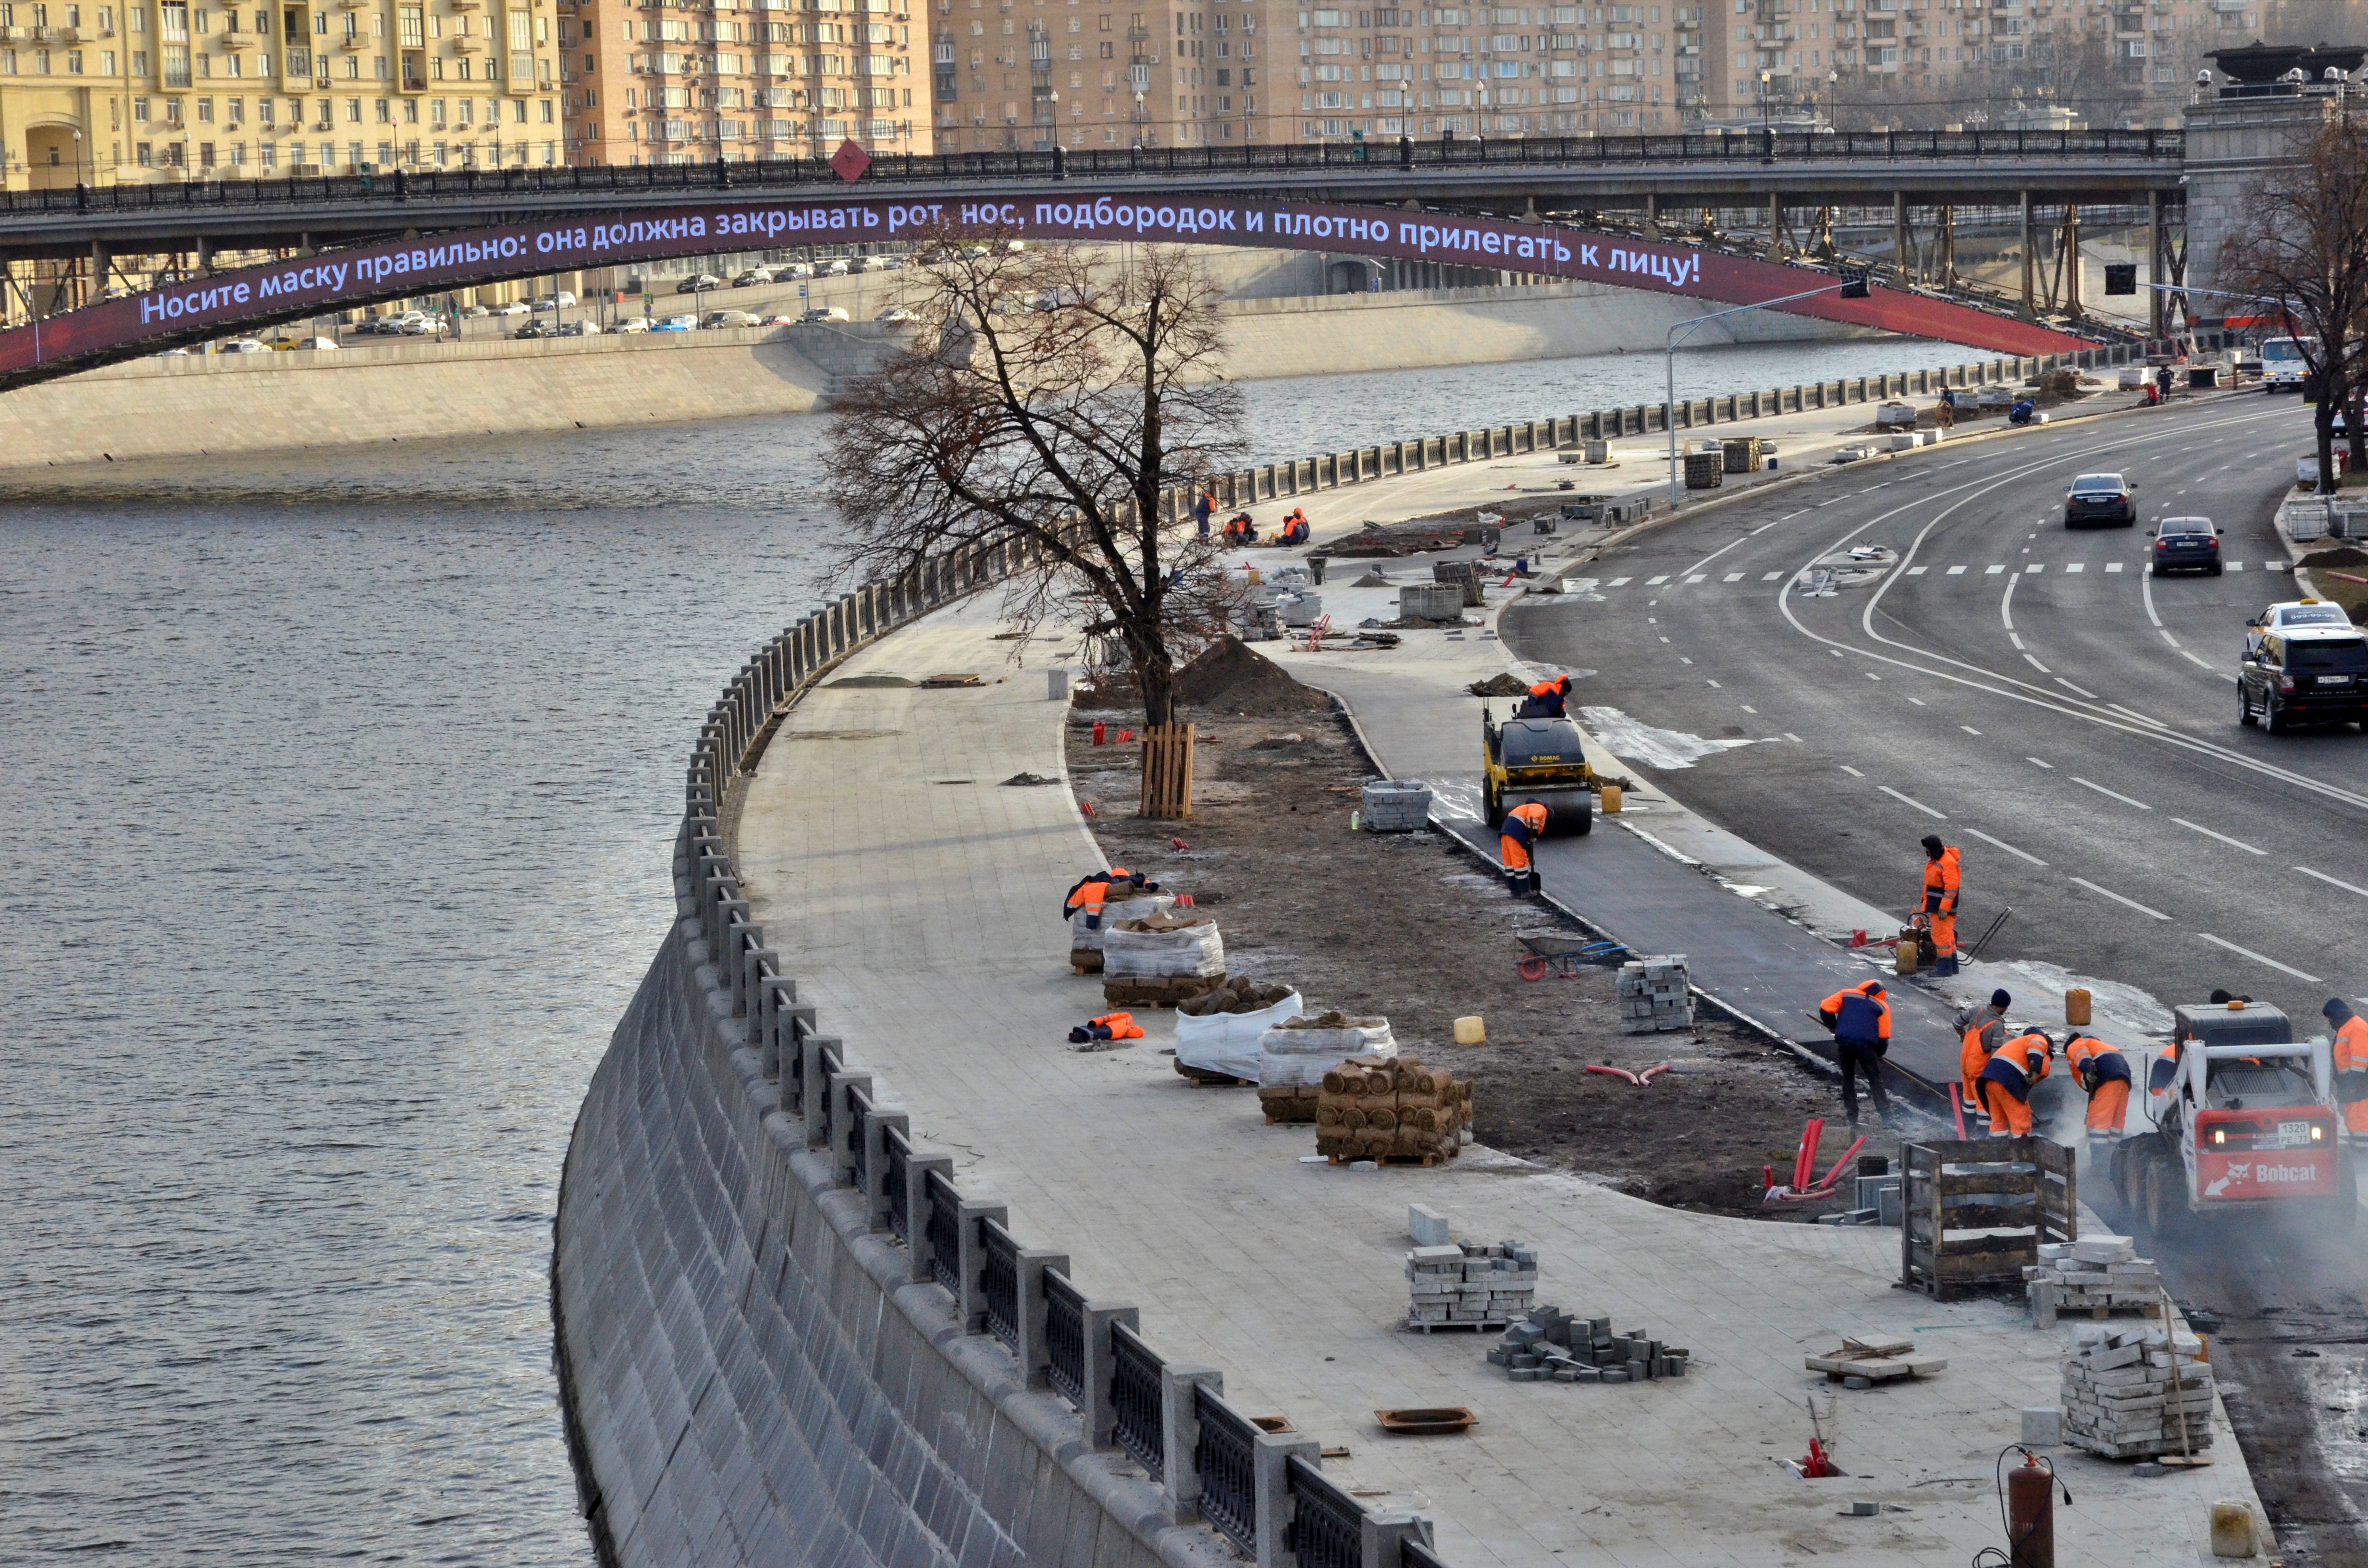 Эксперт: Хордовые магистрали станут одним из важных элементов транспортного каркаса столицы. Фото: Анна Быкова